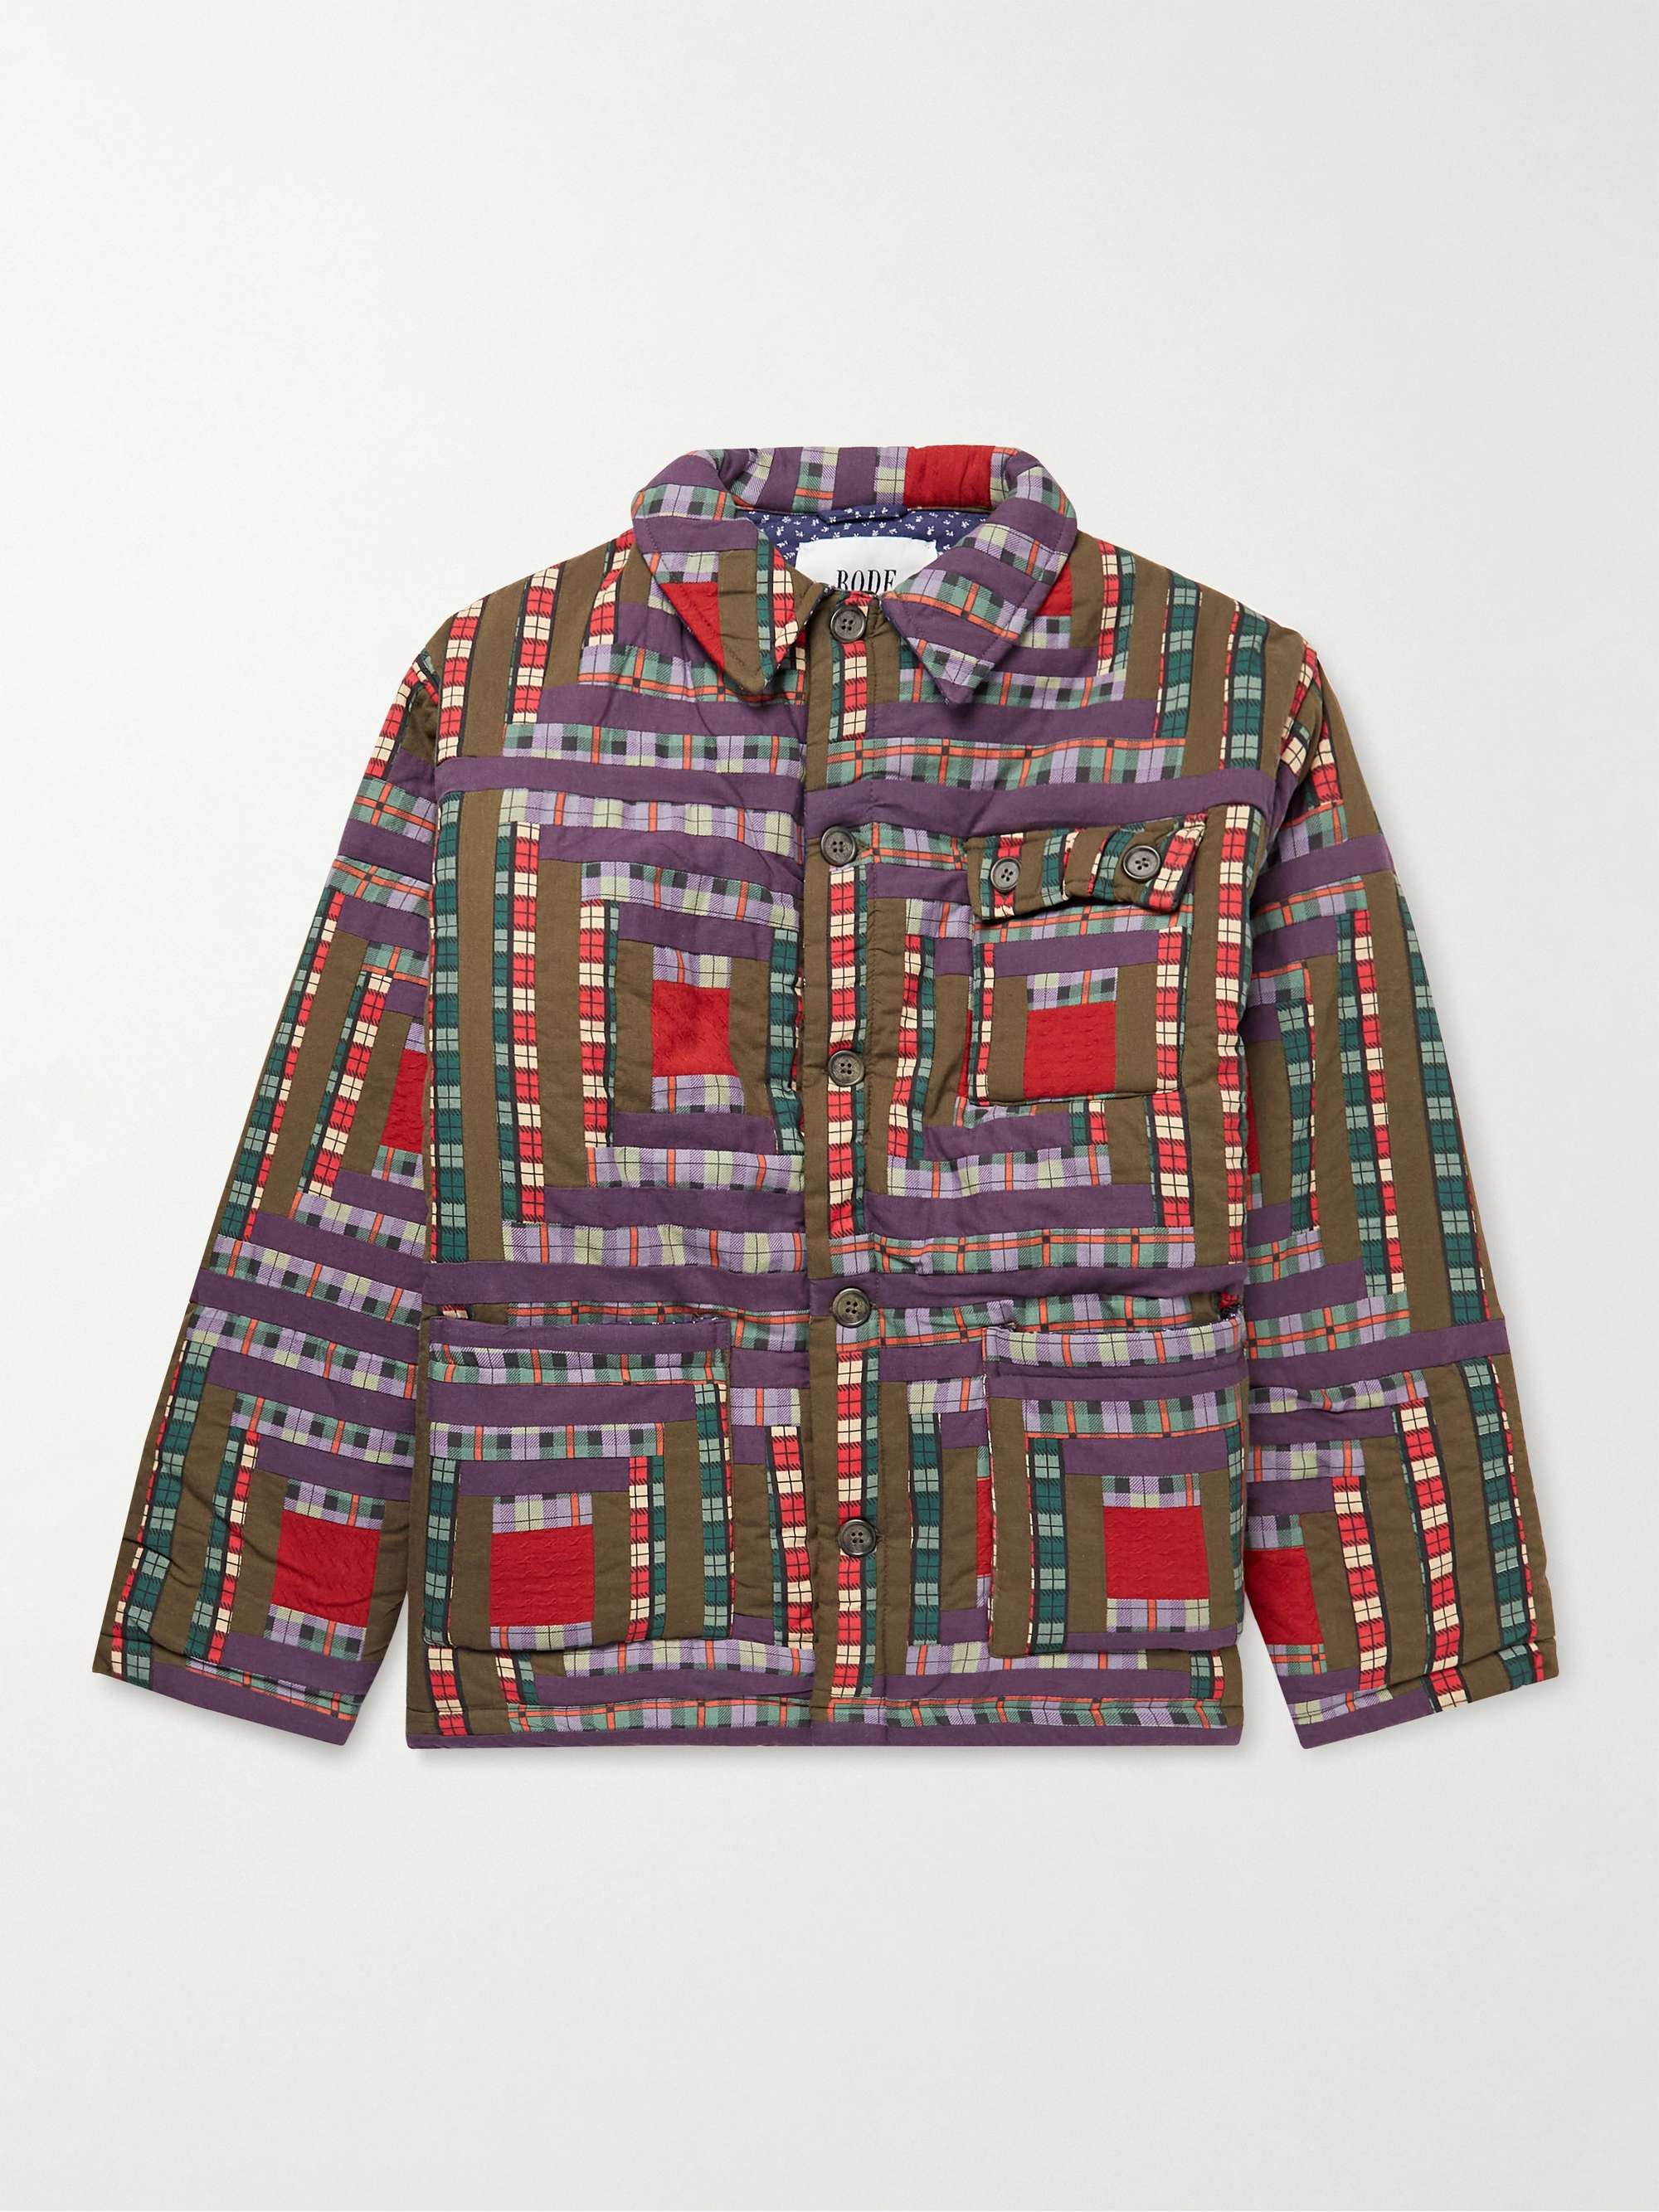 BODE Log Cabin Patchwork Checked Cotton Jacket for Men | MR PORTER